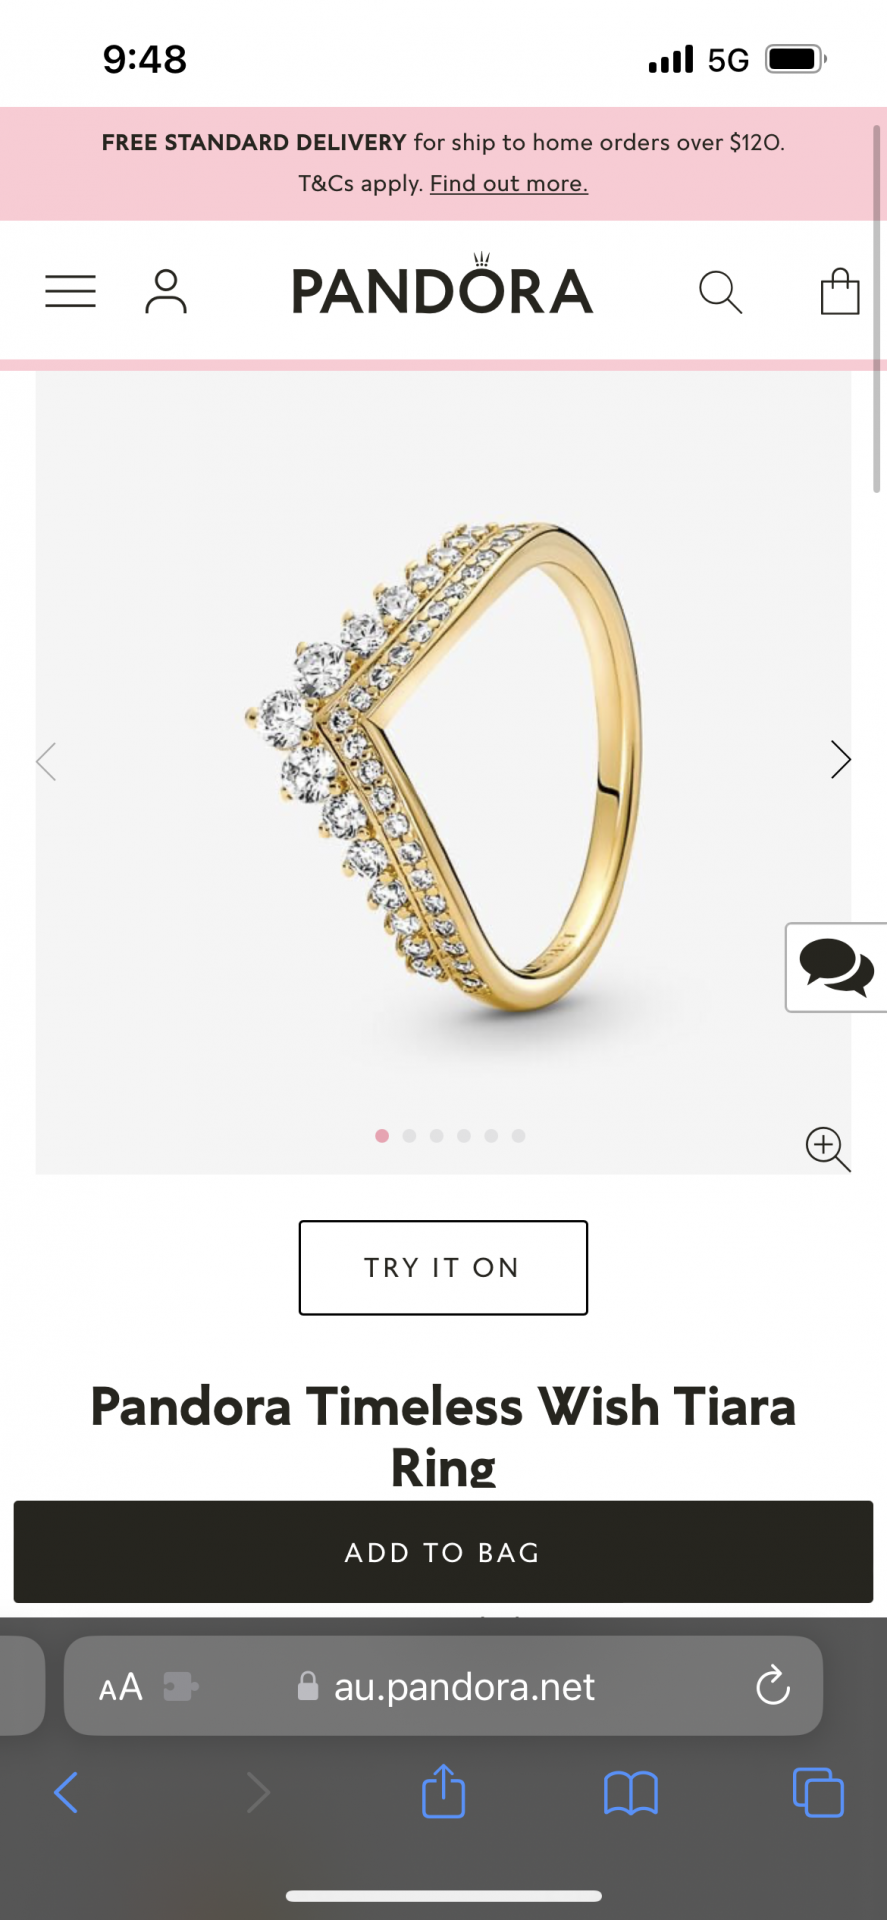 Pandora Timeless Wish Tiara Ring